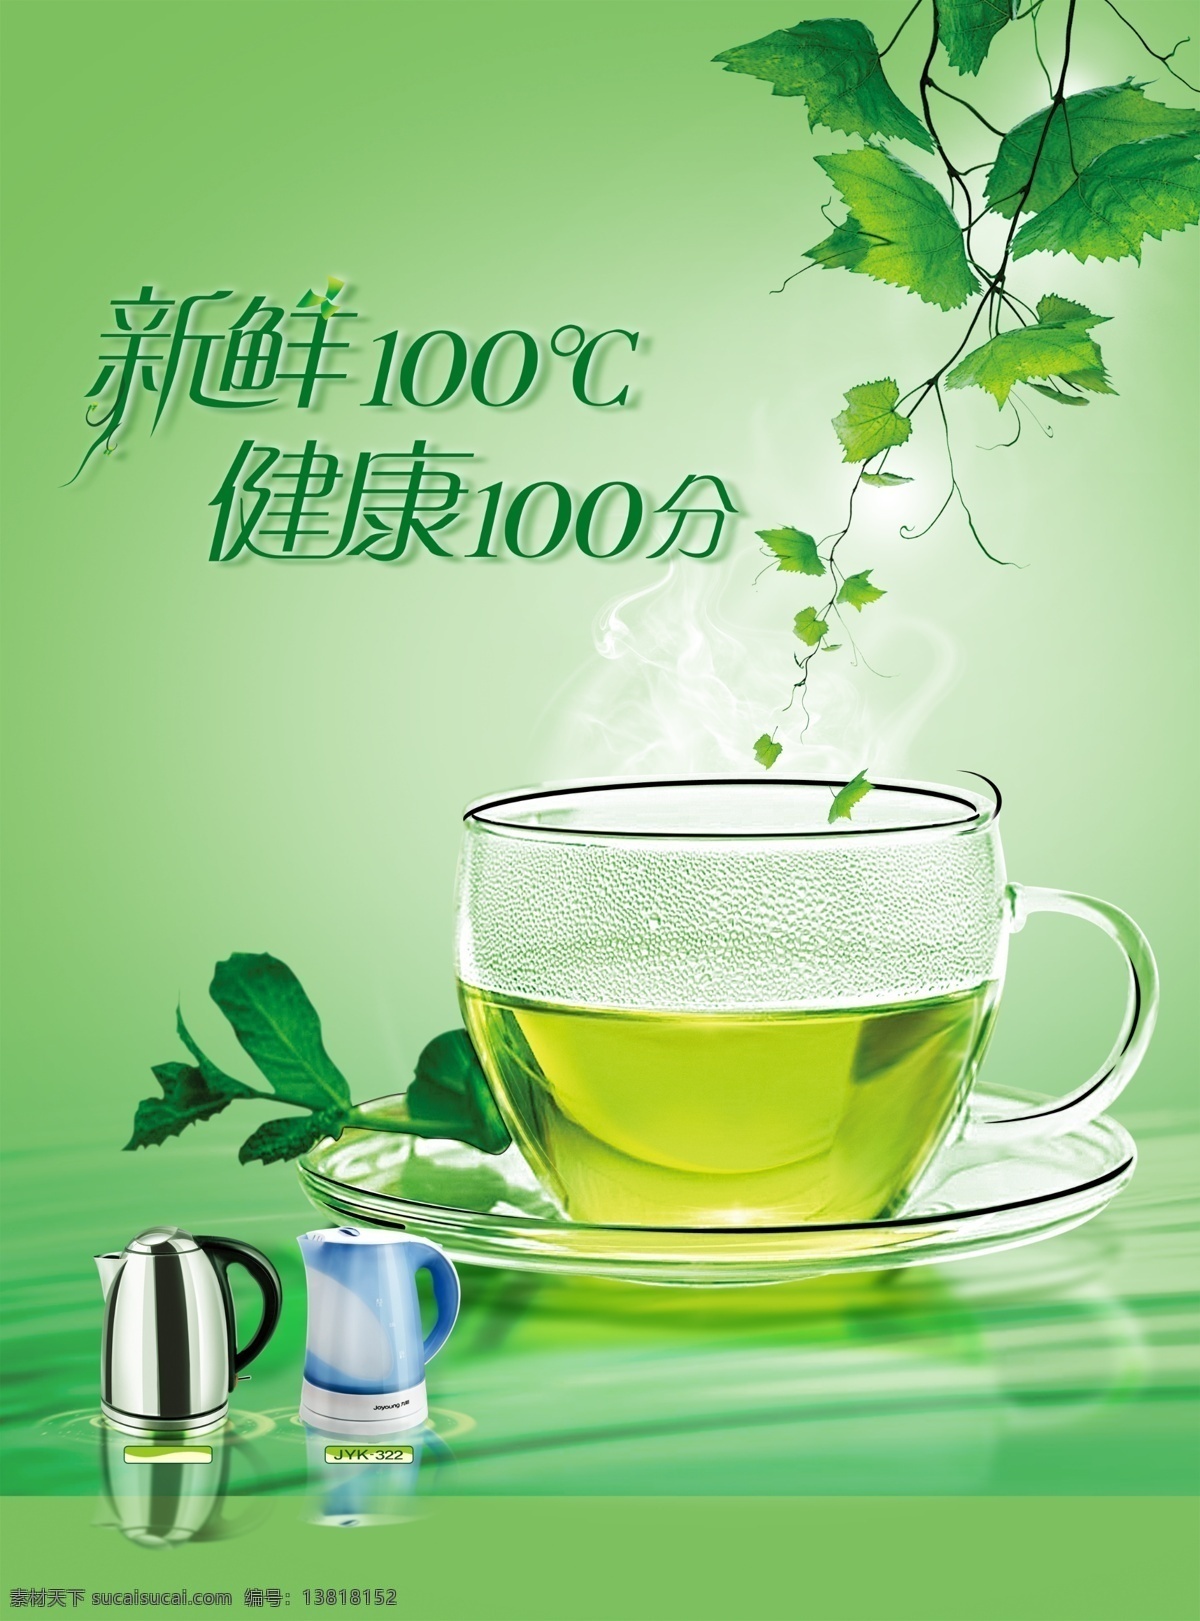 养生茶 清火茶 降火茶 凉茶 茶 绿茶 资源共享